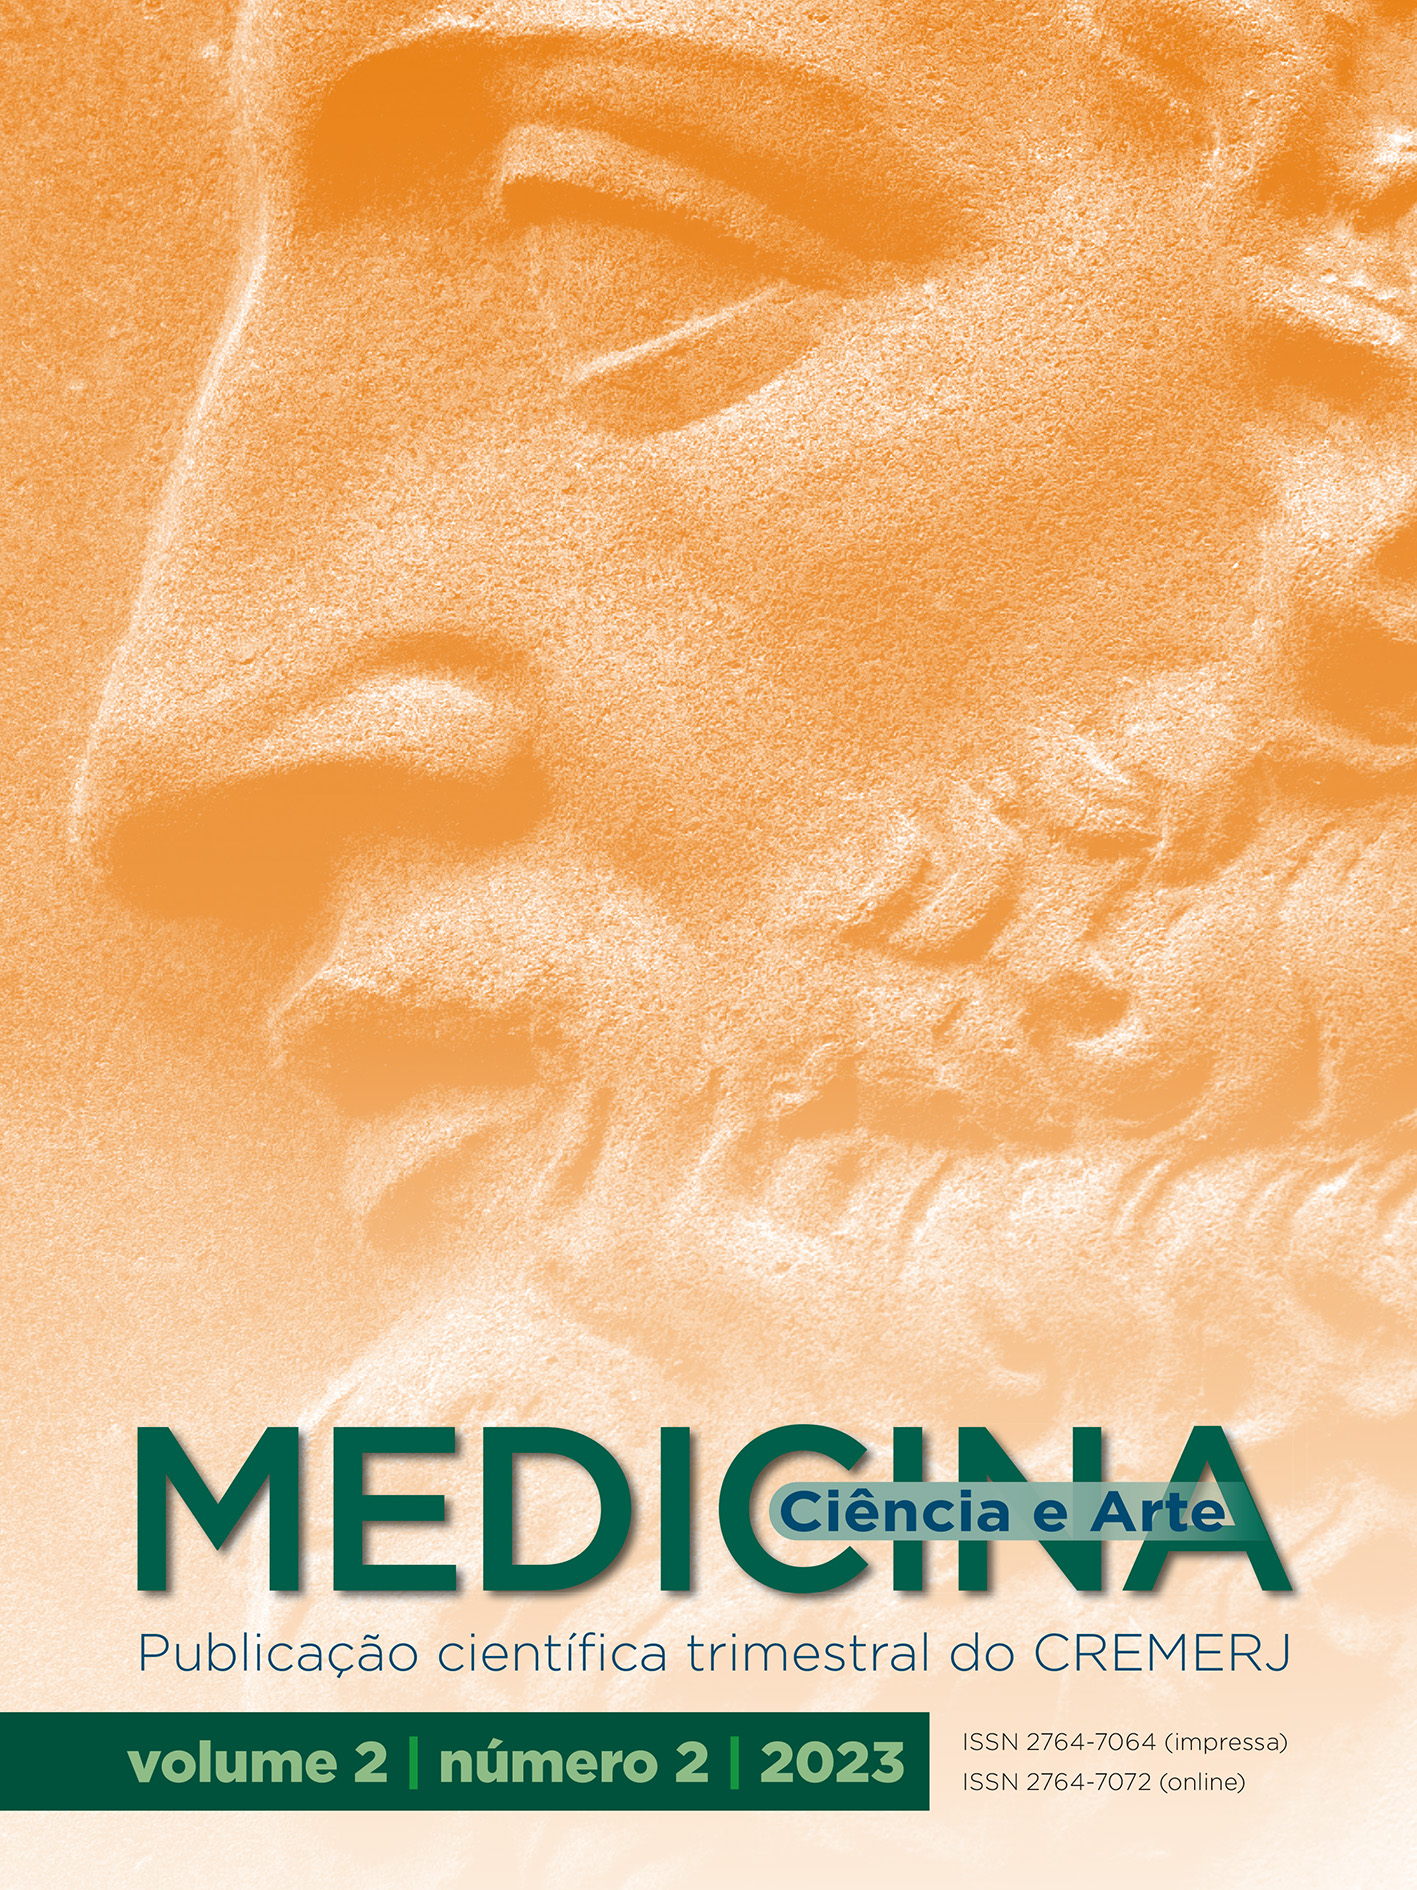 Capa apresenta imagem do Asclépio, Deus da Medicina